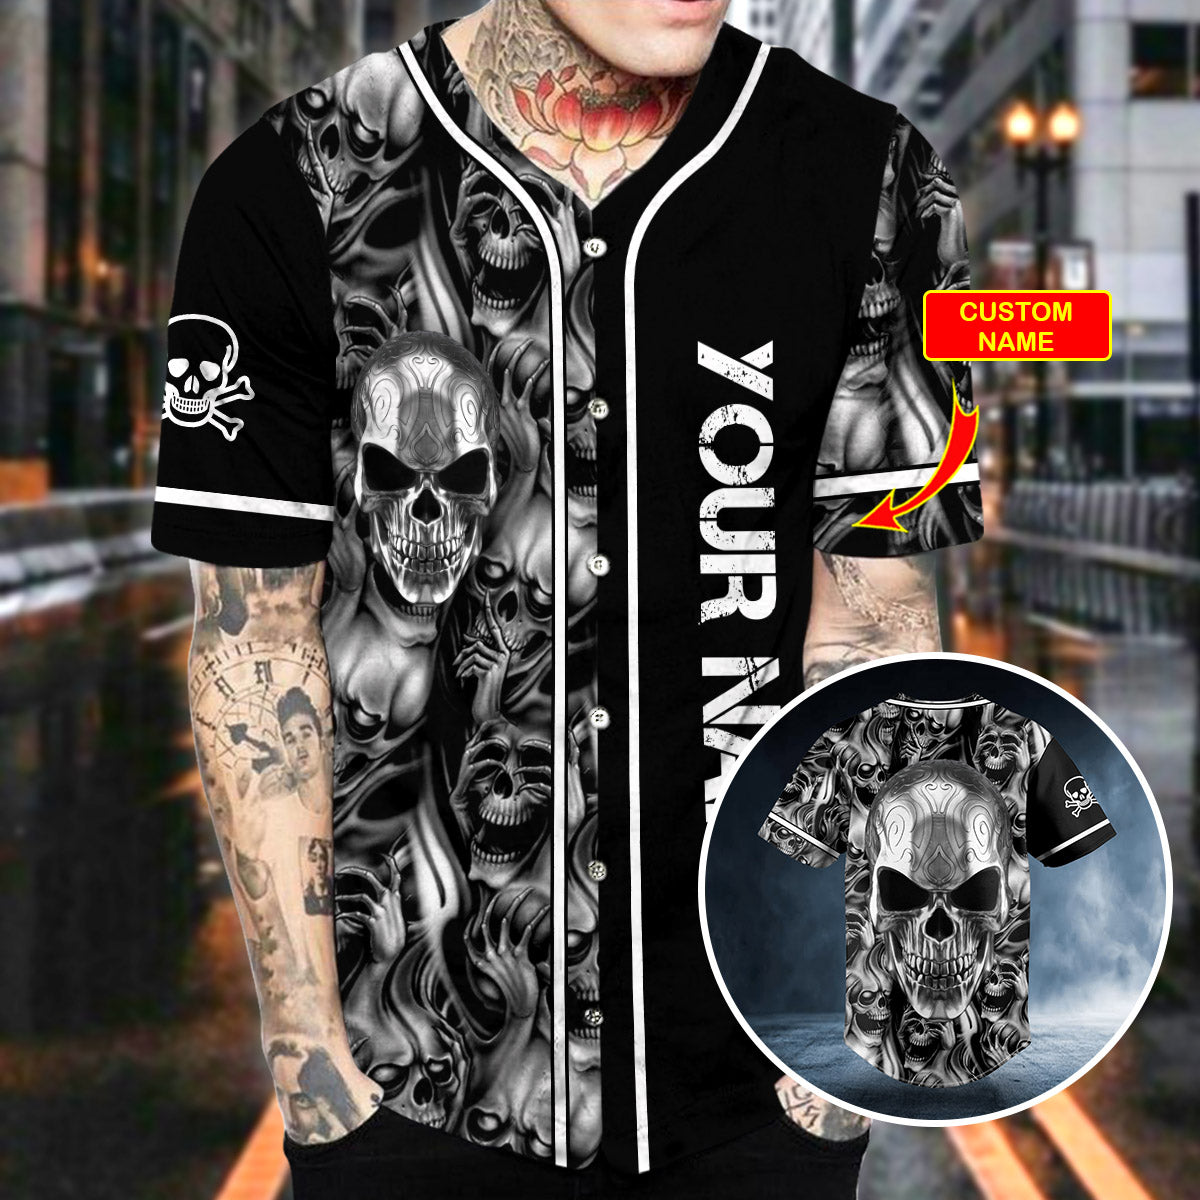 tribal tattoos metal skull custom baseball jersey bsj 745 ax0bn